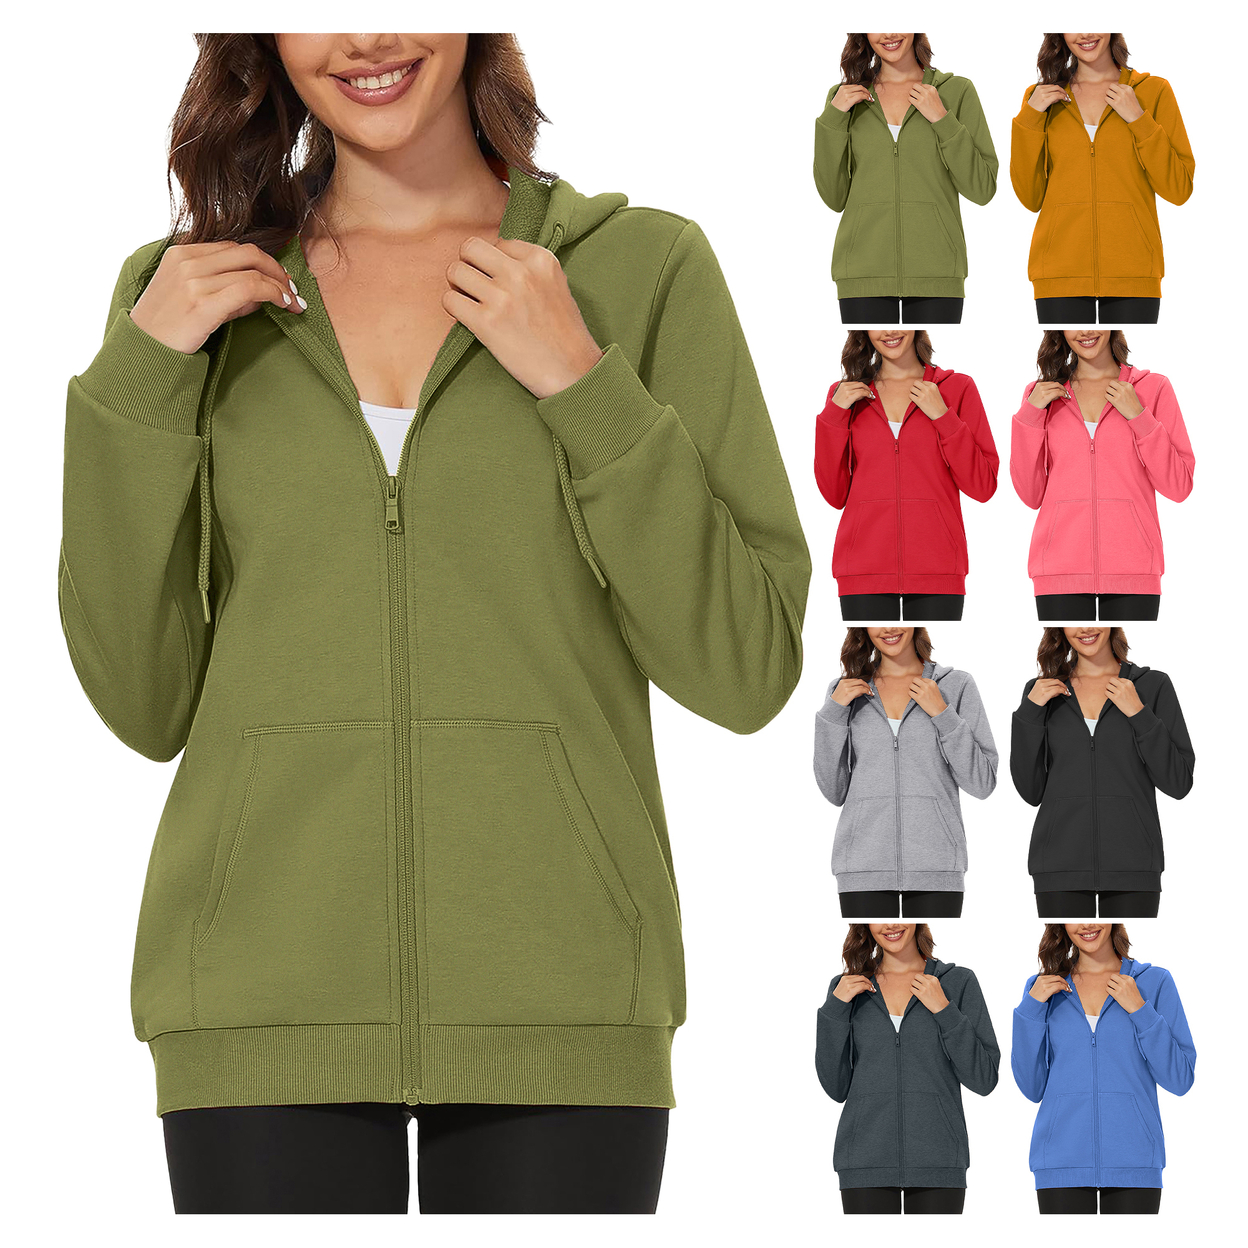 2-Pack: Women's Winter Warm Soft Blend Fleece Lined Full Zip Up Hoodies - Medium